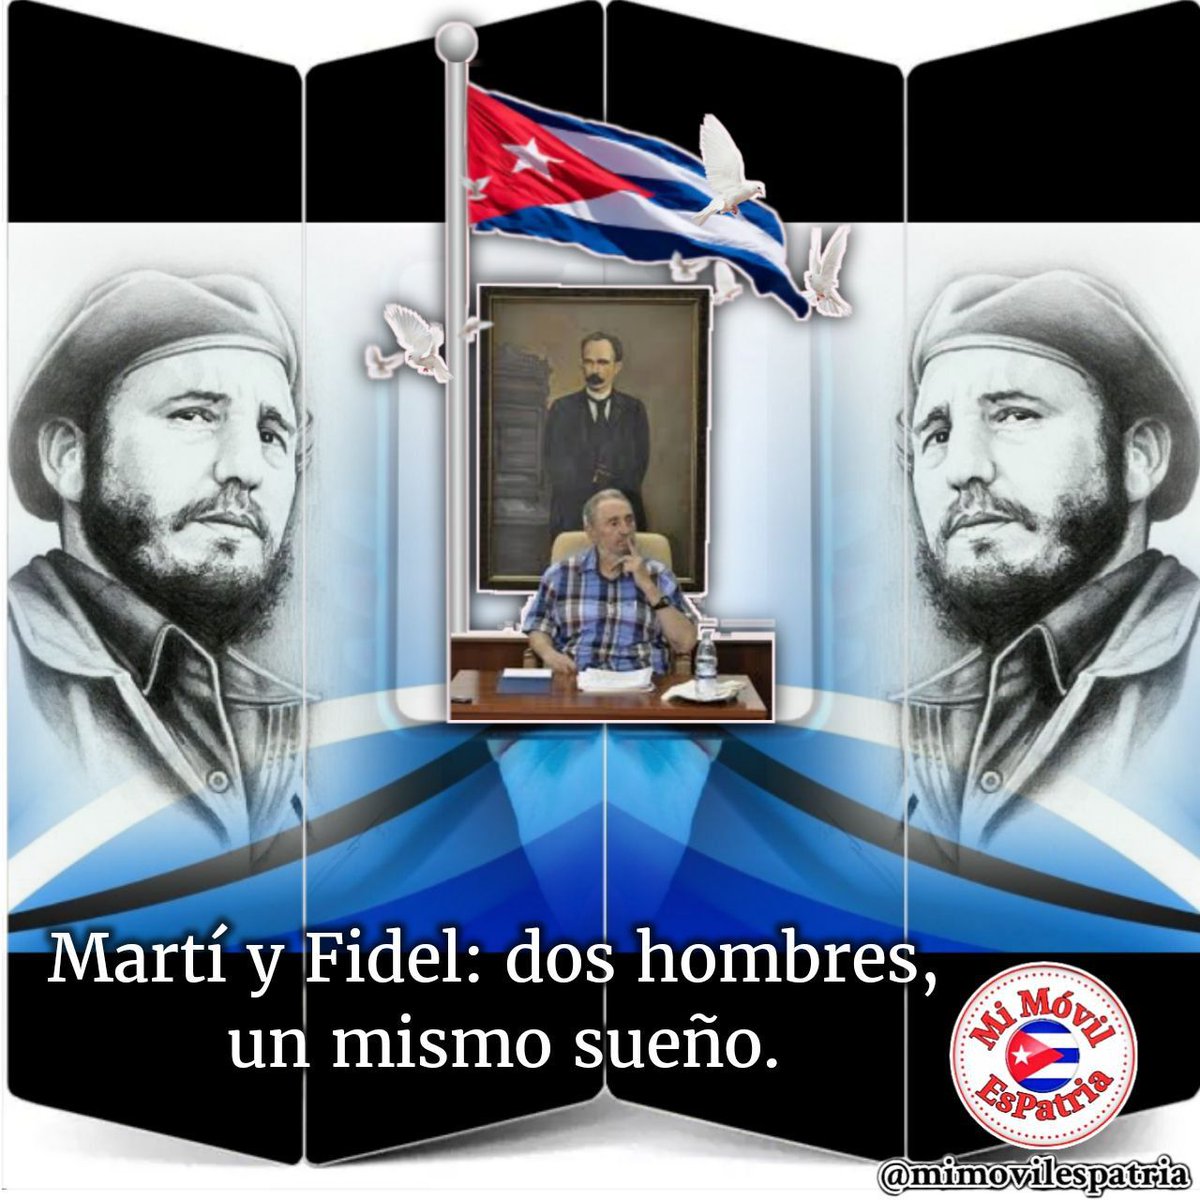 #CubaViveEnSuHistoría 
#CiegodeAvila 
#LatirXUn26Avileño 
#CepilVaPorMas